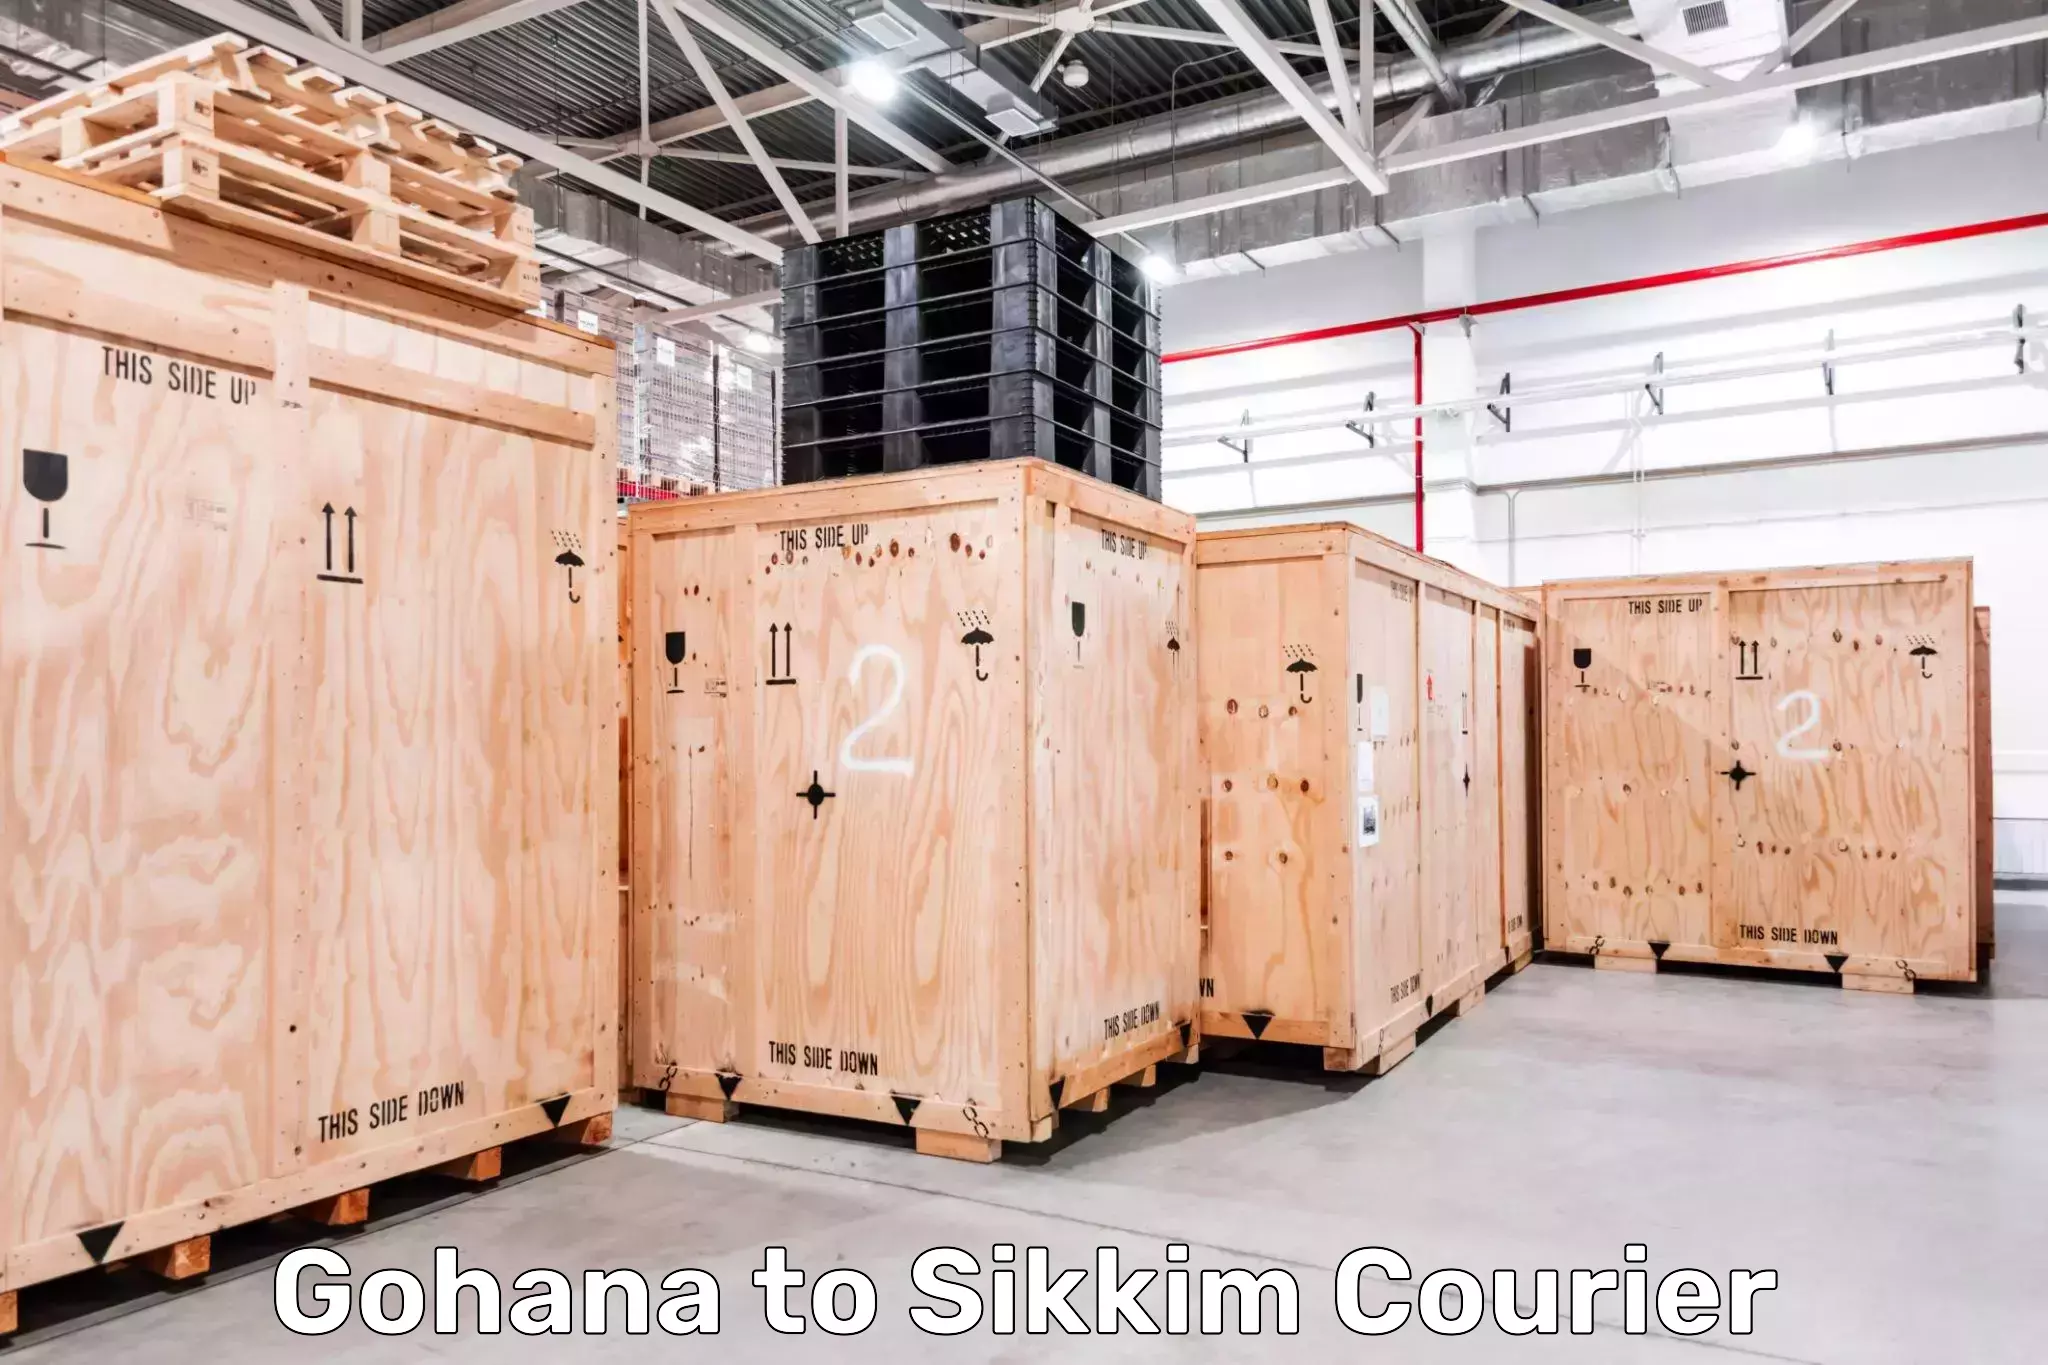 Door-to-door freight service Gohana to Sikkim